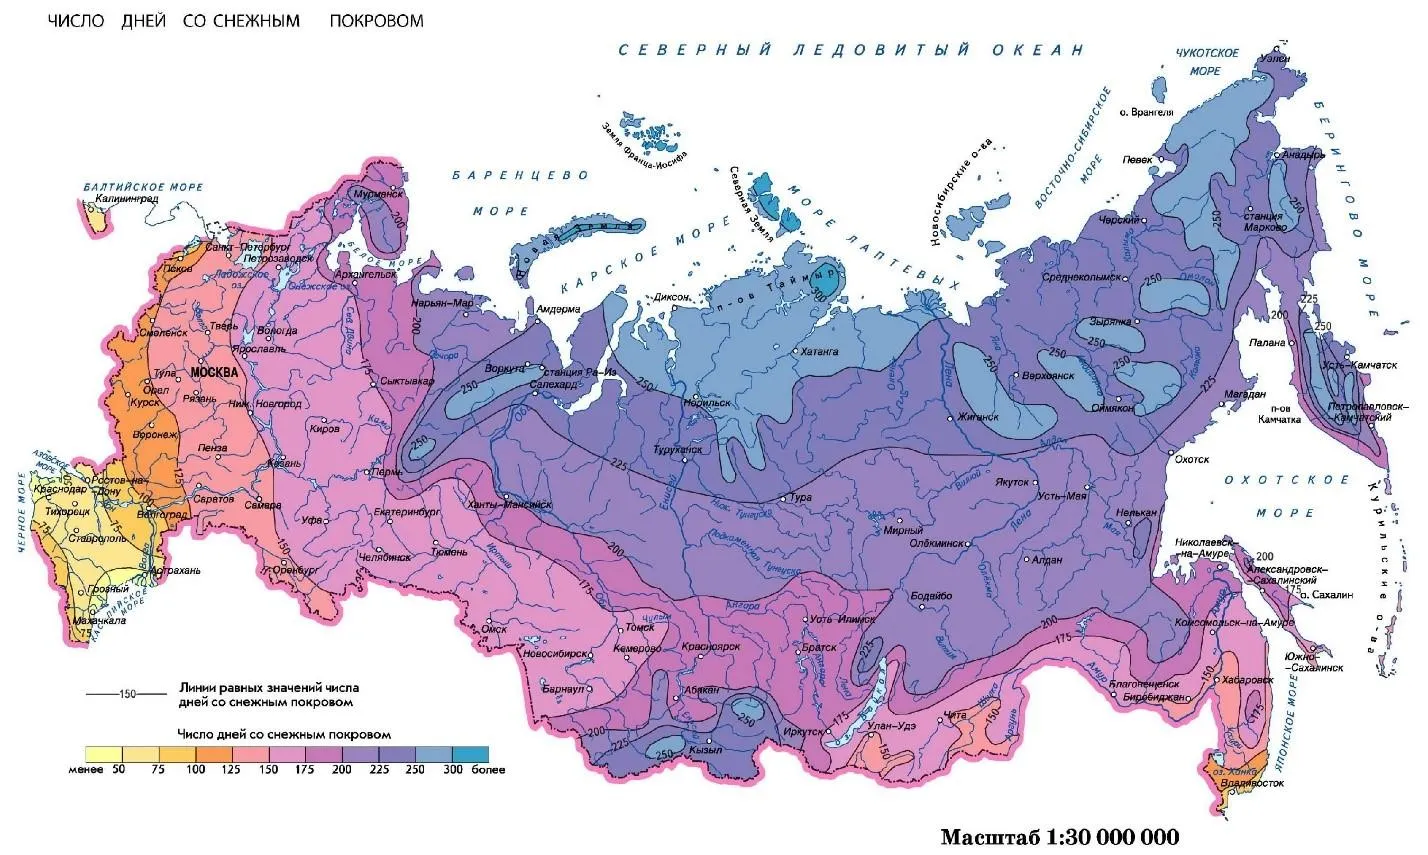 Количество дней со снежным покровом по регионам России